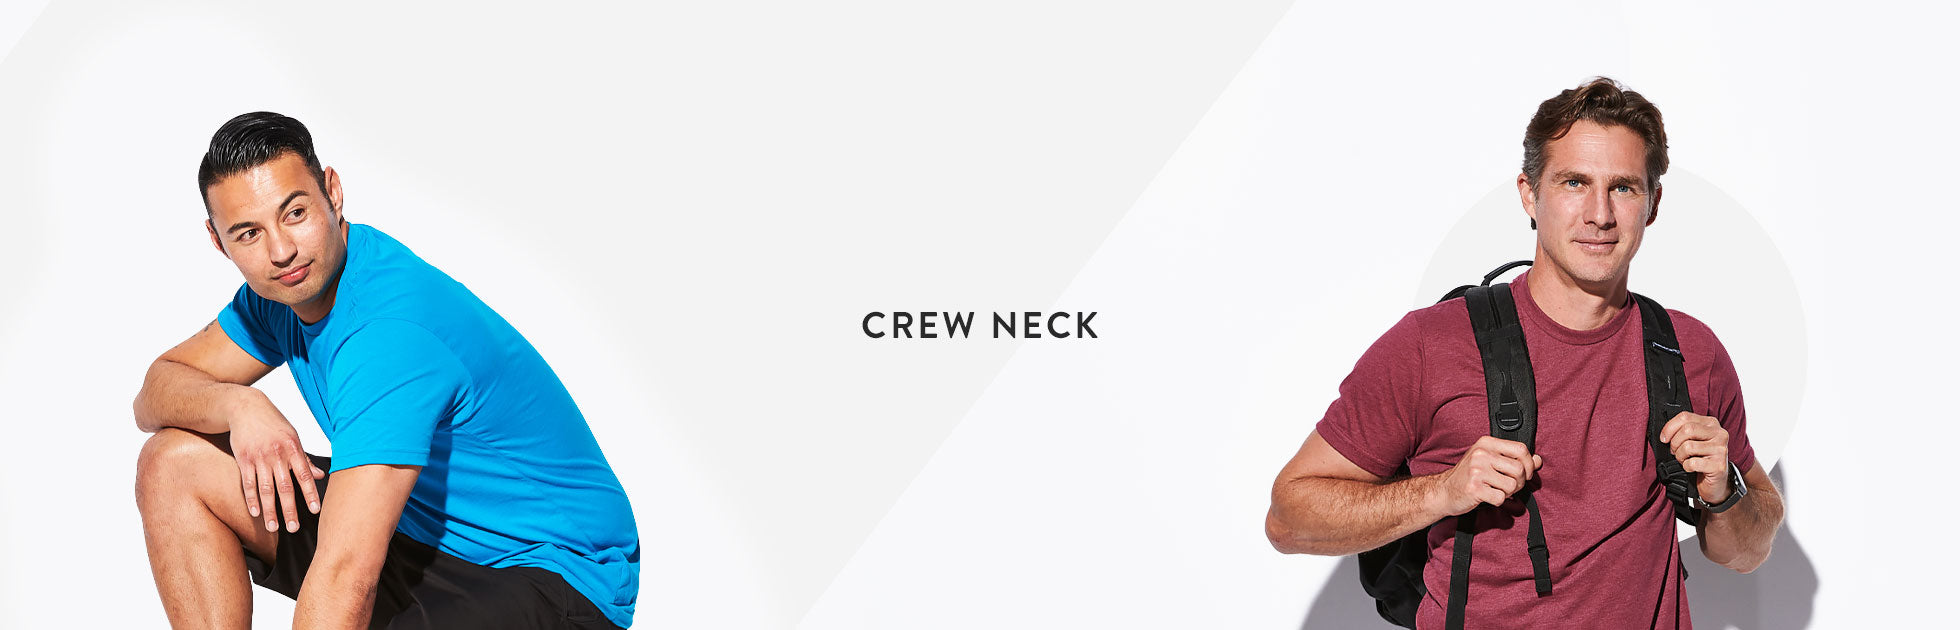 Crew Neck